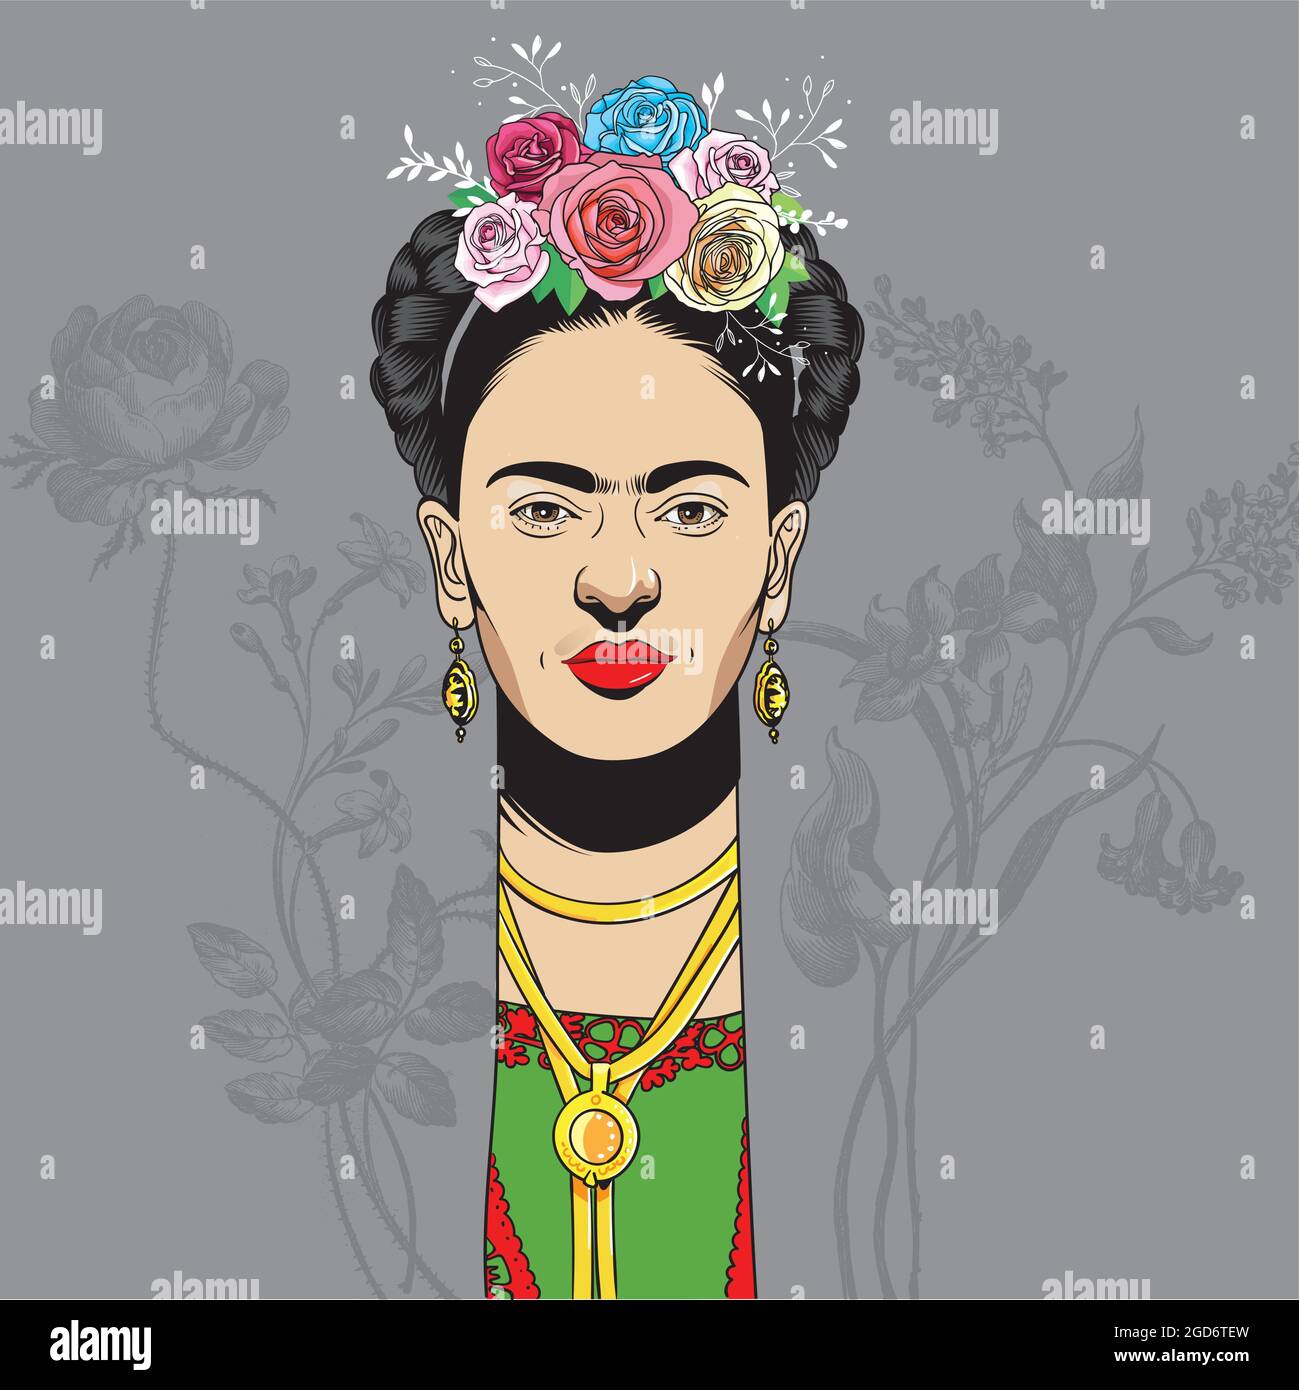 Frida Kahlo Porträt im Cartoon-Stil, sie war eine mexikanische Malerin bekannt für ihre vielen Porträts, Selbstporträts und Werke inspiriert von der Natur und Künstler Stock Vektor